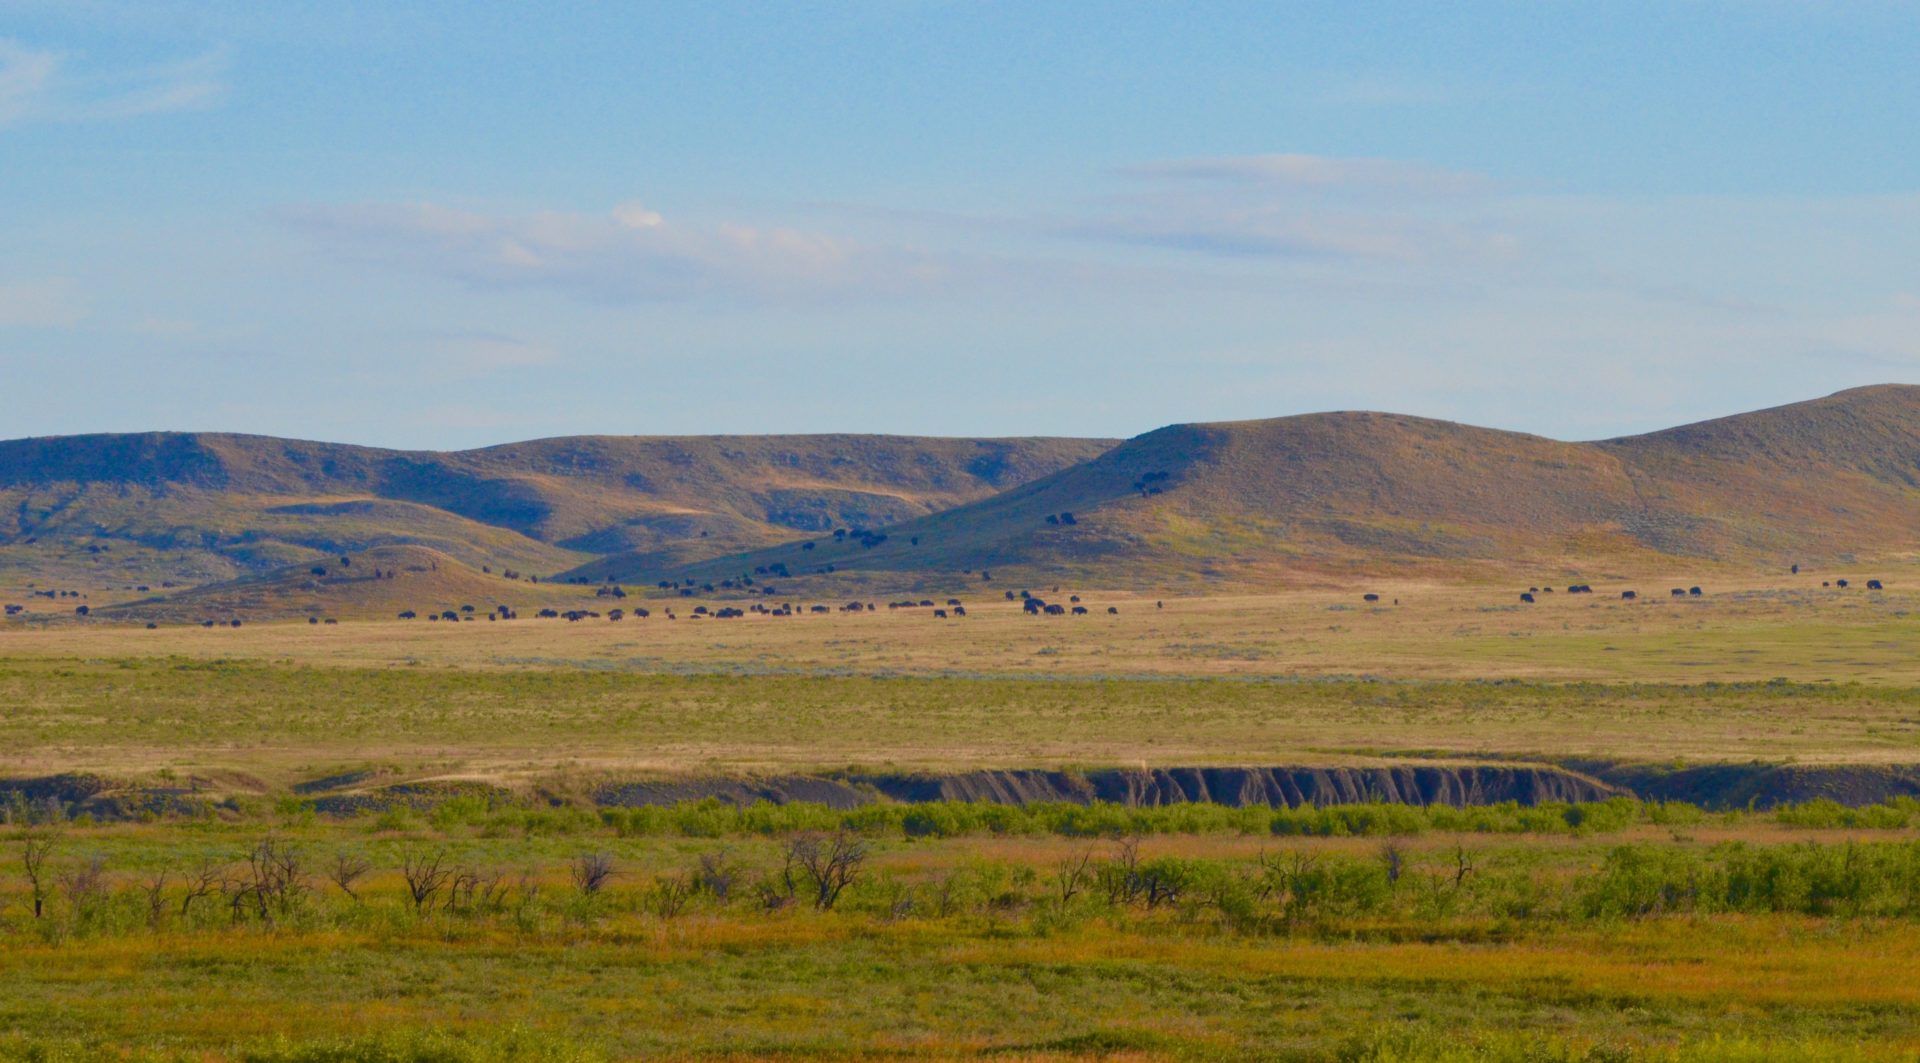 Grasslands National Park Bison Herd